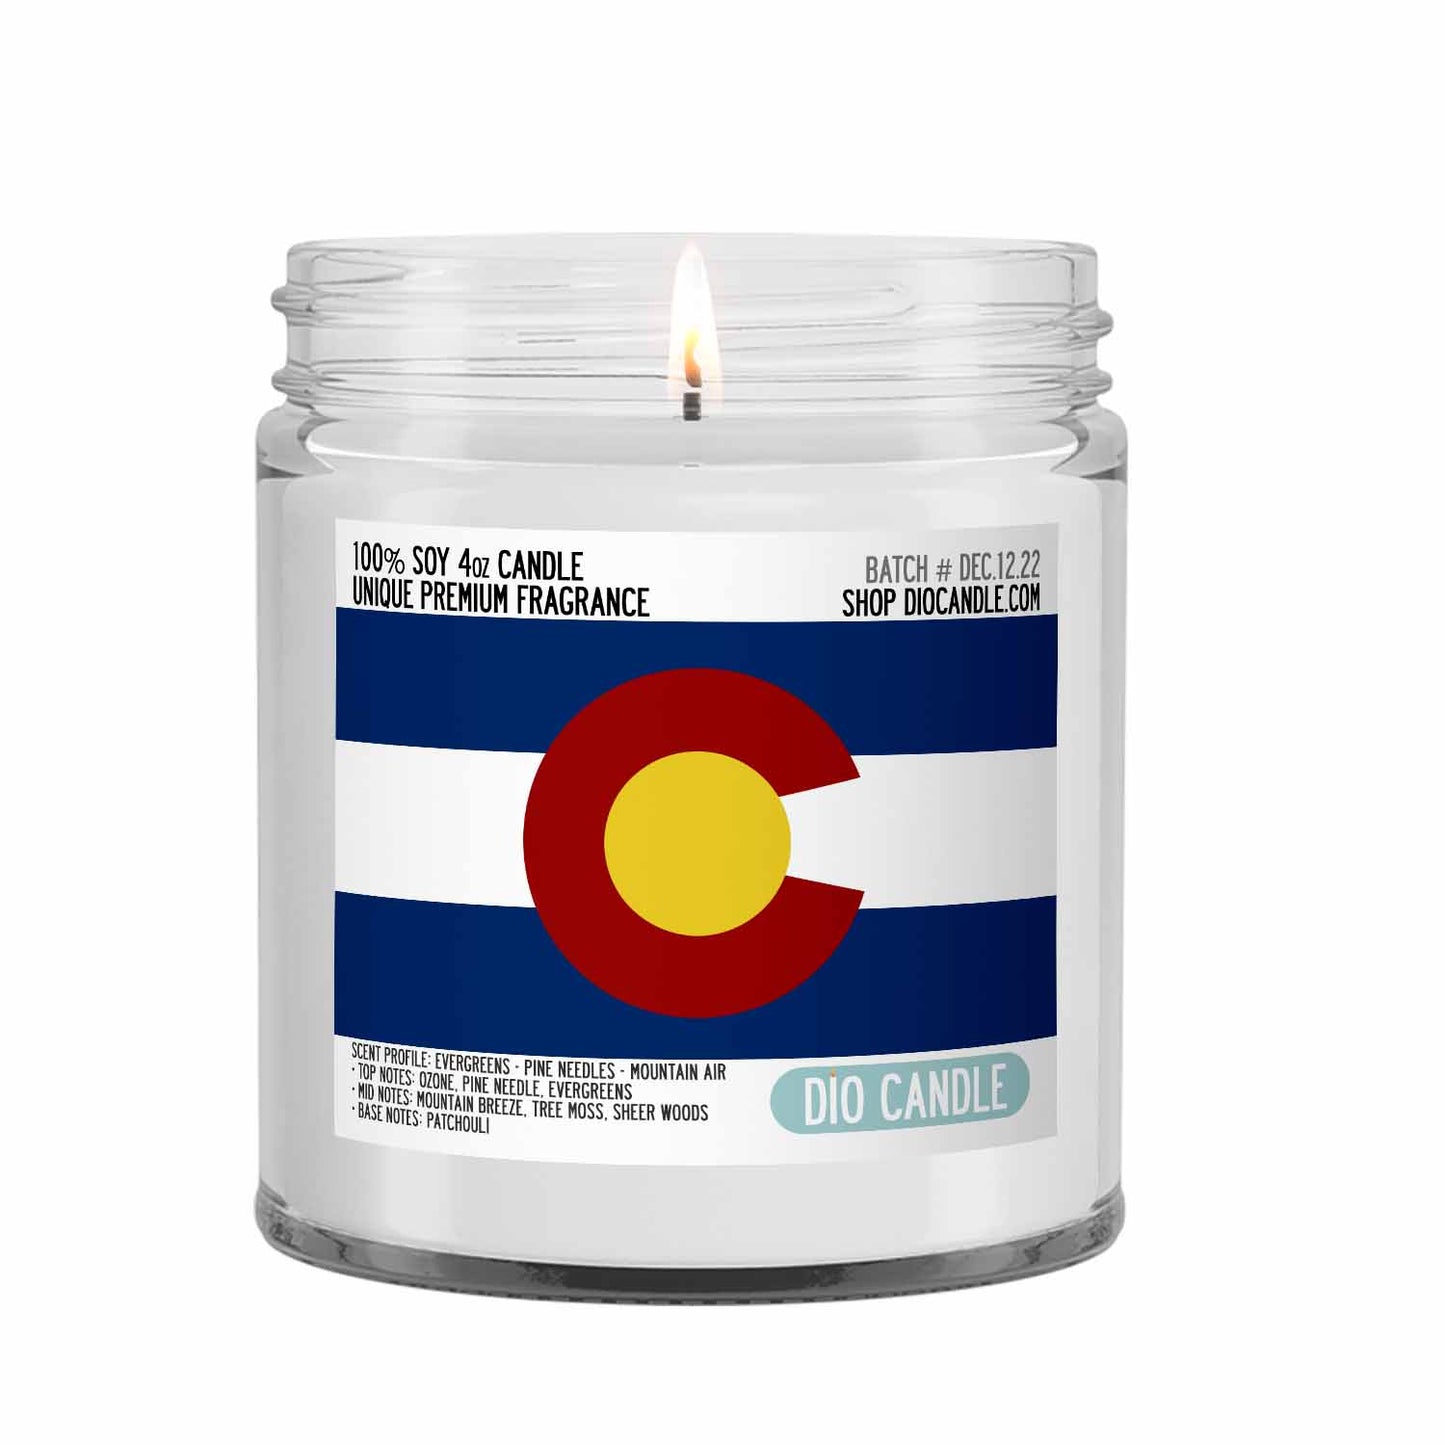 Colorado Candle